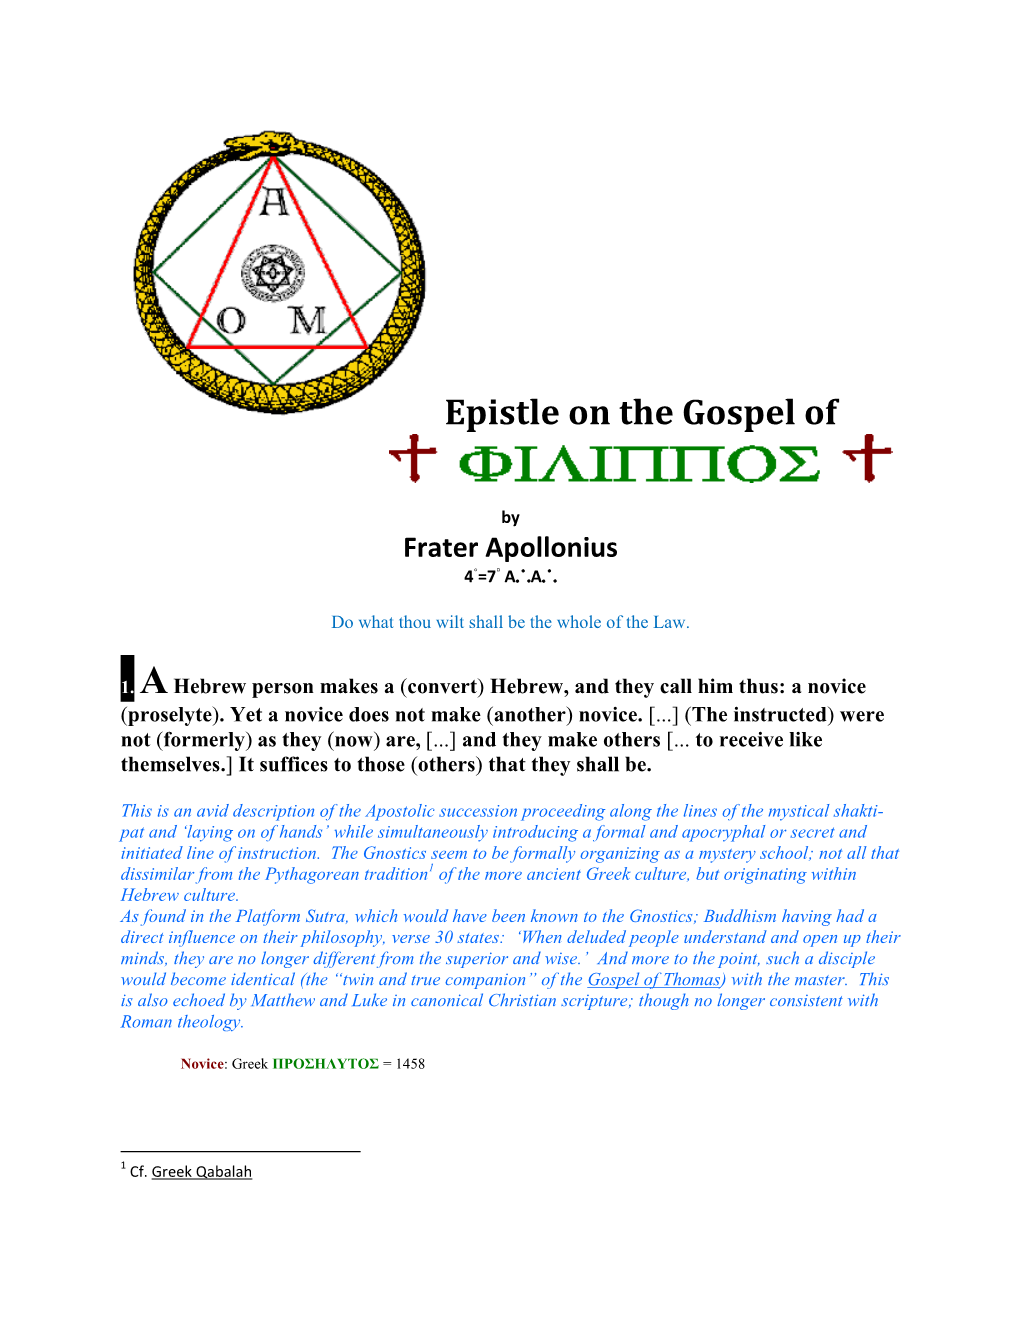 Epistle on the Gospel of Philip